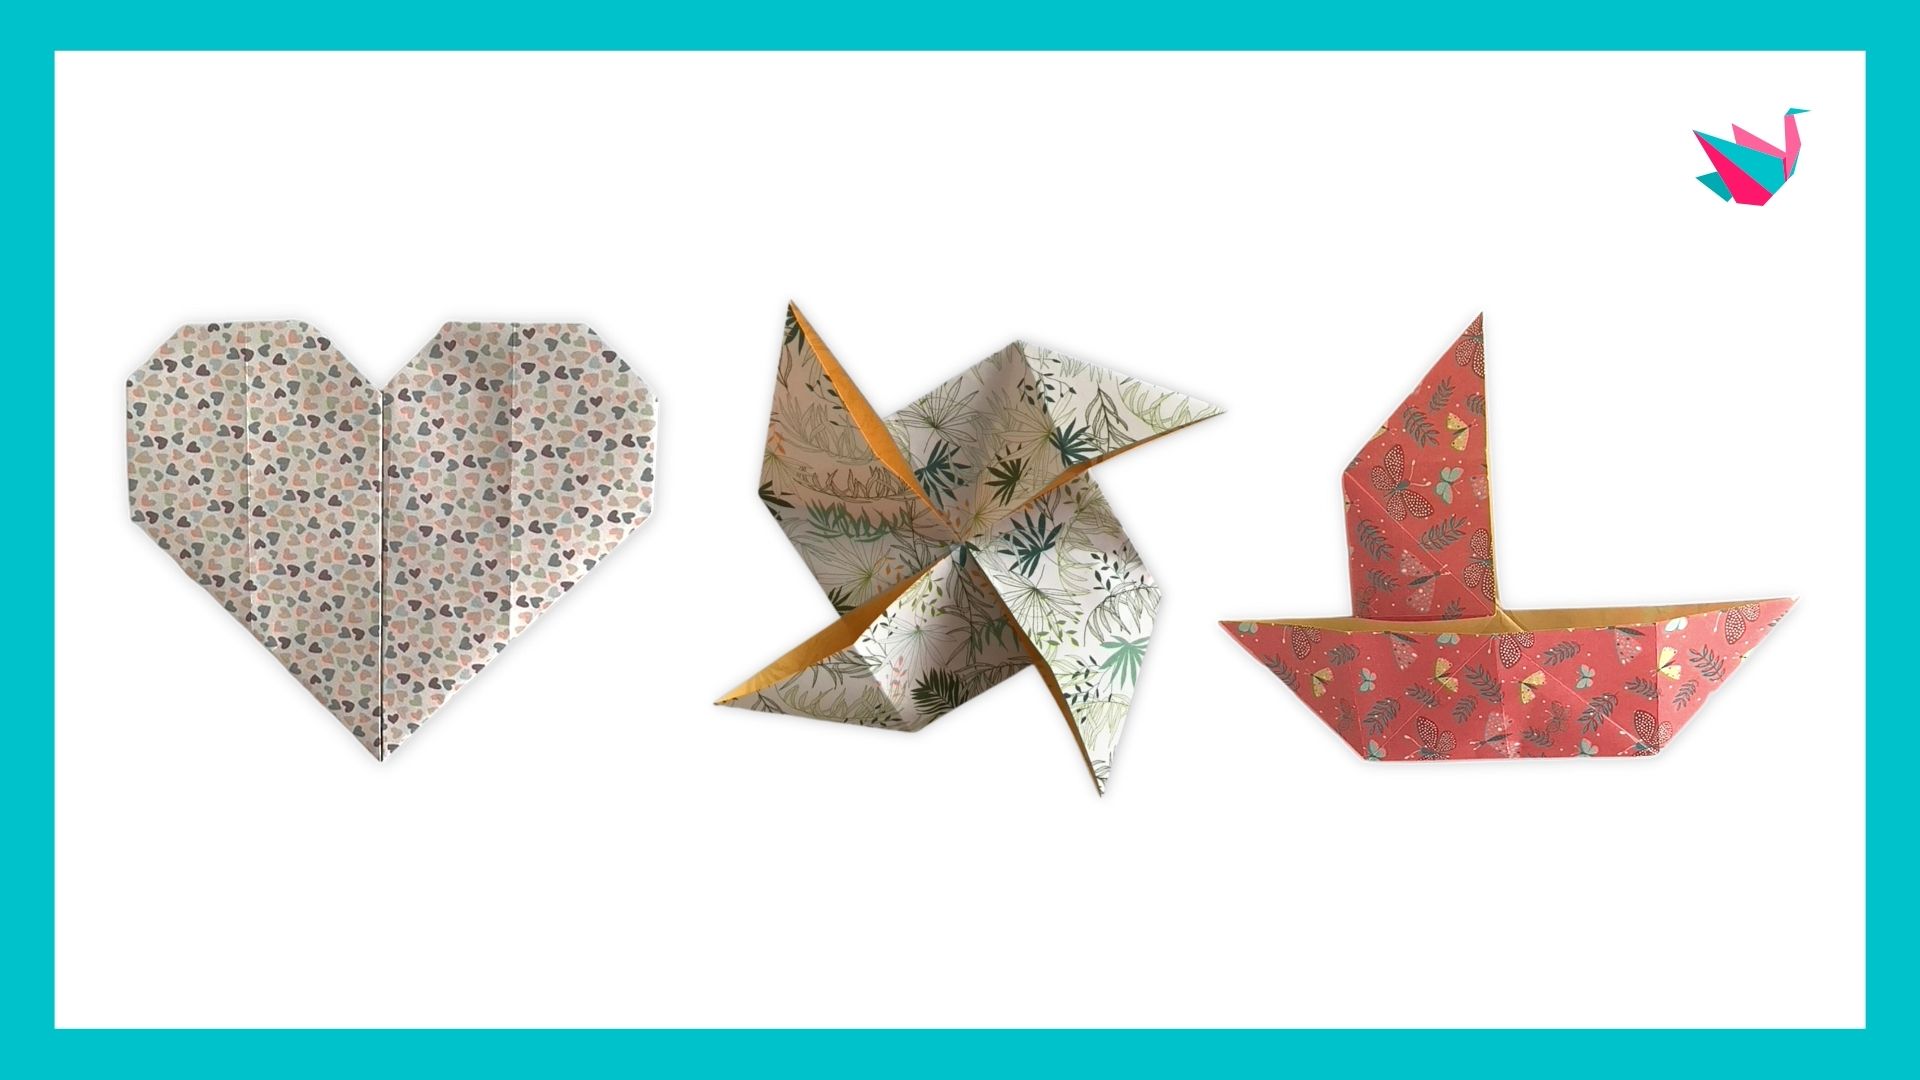 Origami facile : tutos, idées et modèles simples pour débutant ou enfant